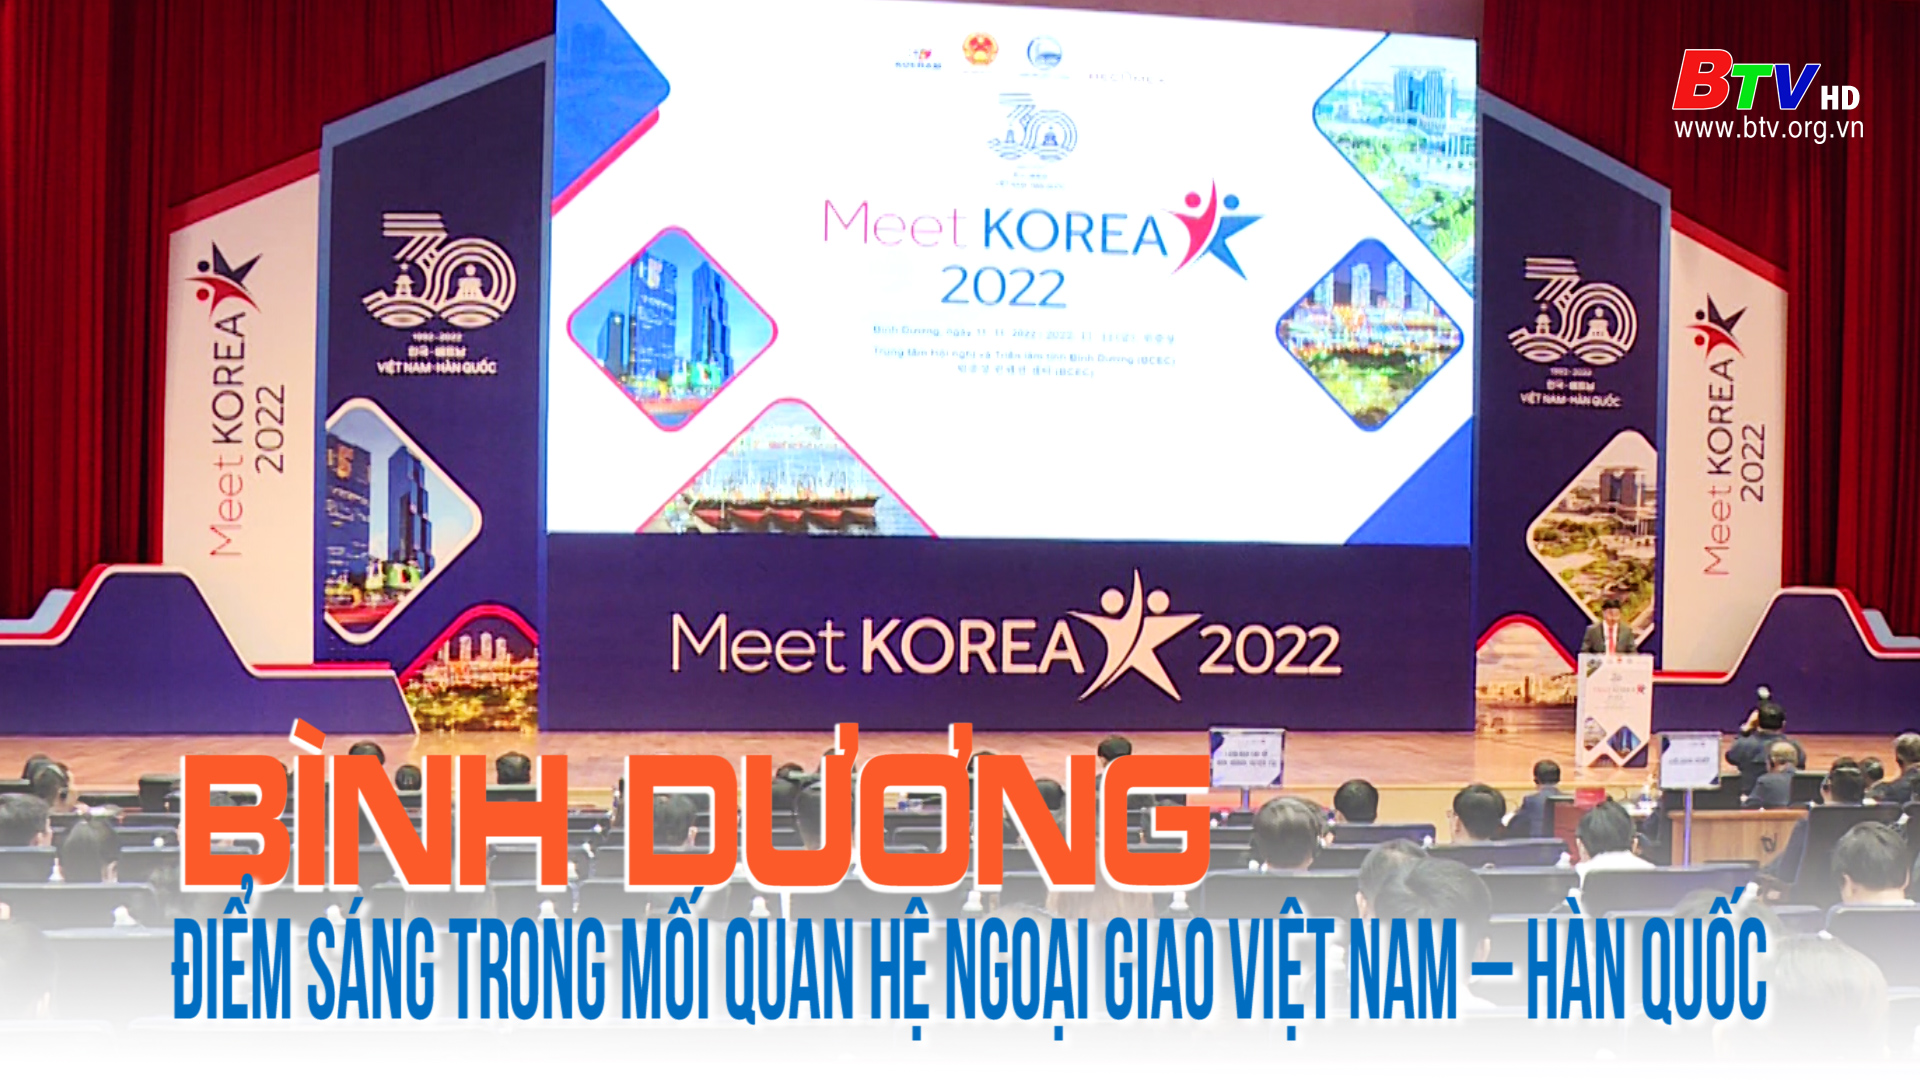 Bình Dương – Điểm sáng trong mối quan hệ ngoại giao Việt Nam – Hàn Quốc